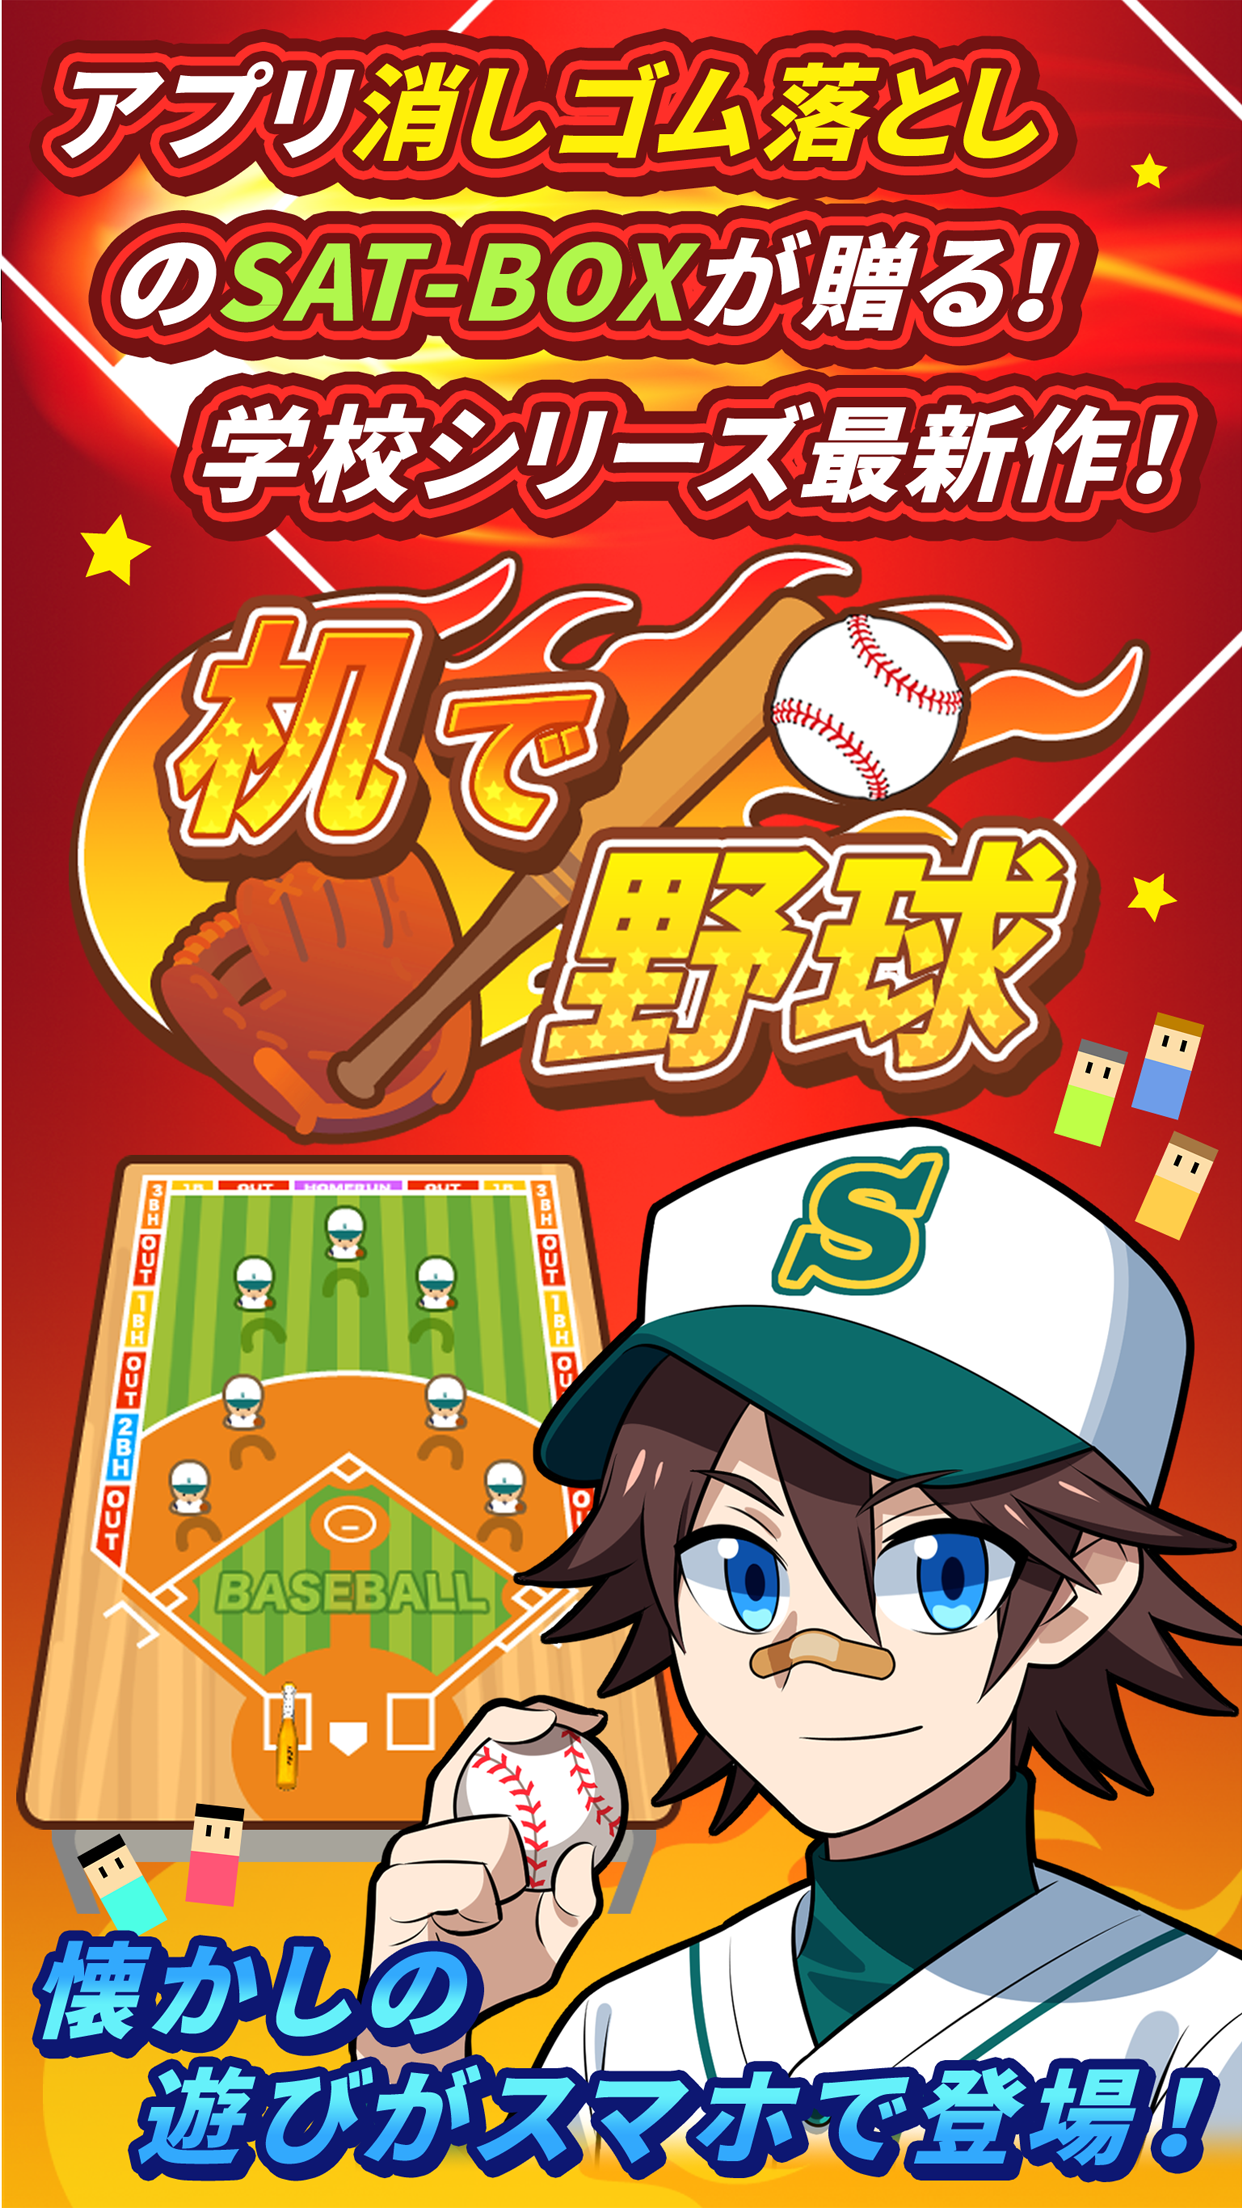 Screenshot 1 of Béisbol en el escritorio [¡Gekimori! Juego gratis Koshien】 1.4.9